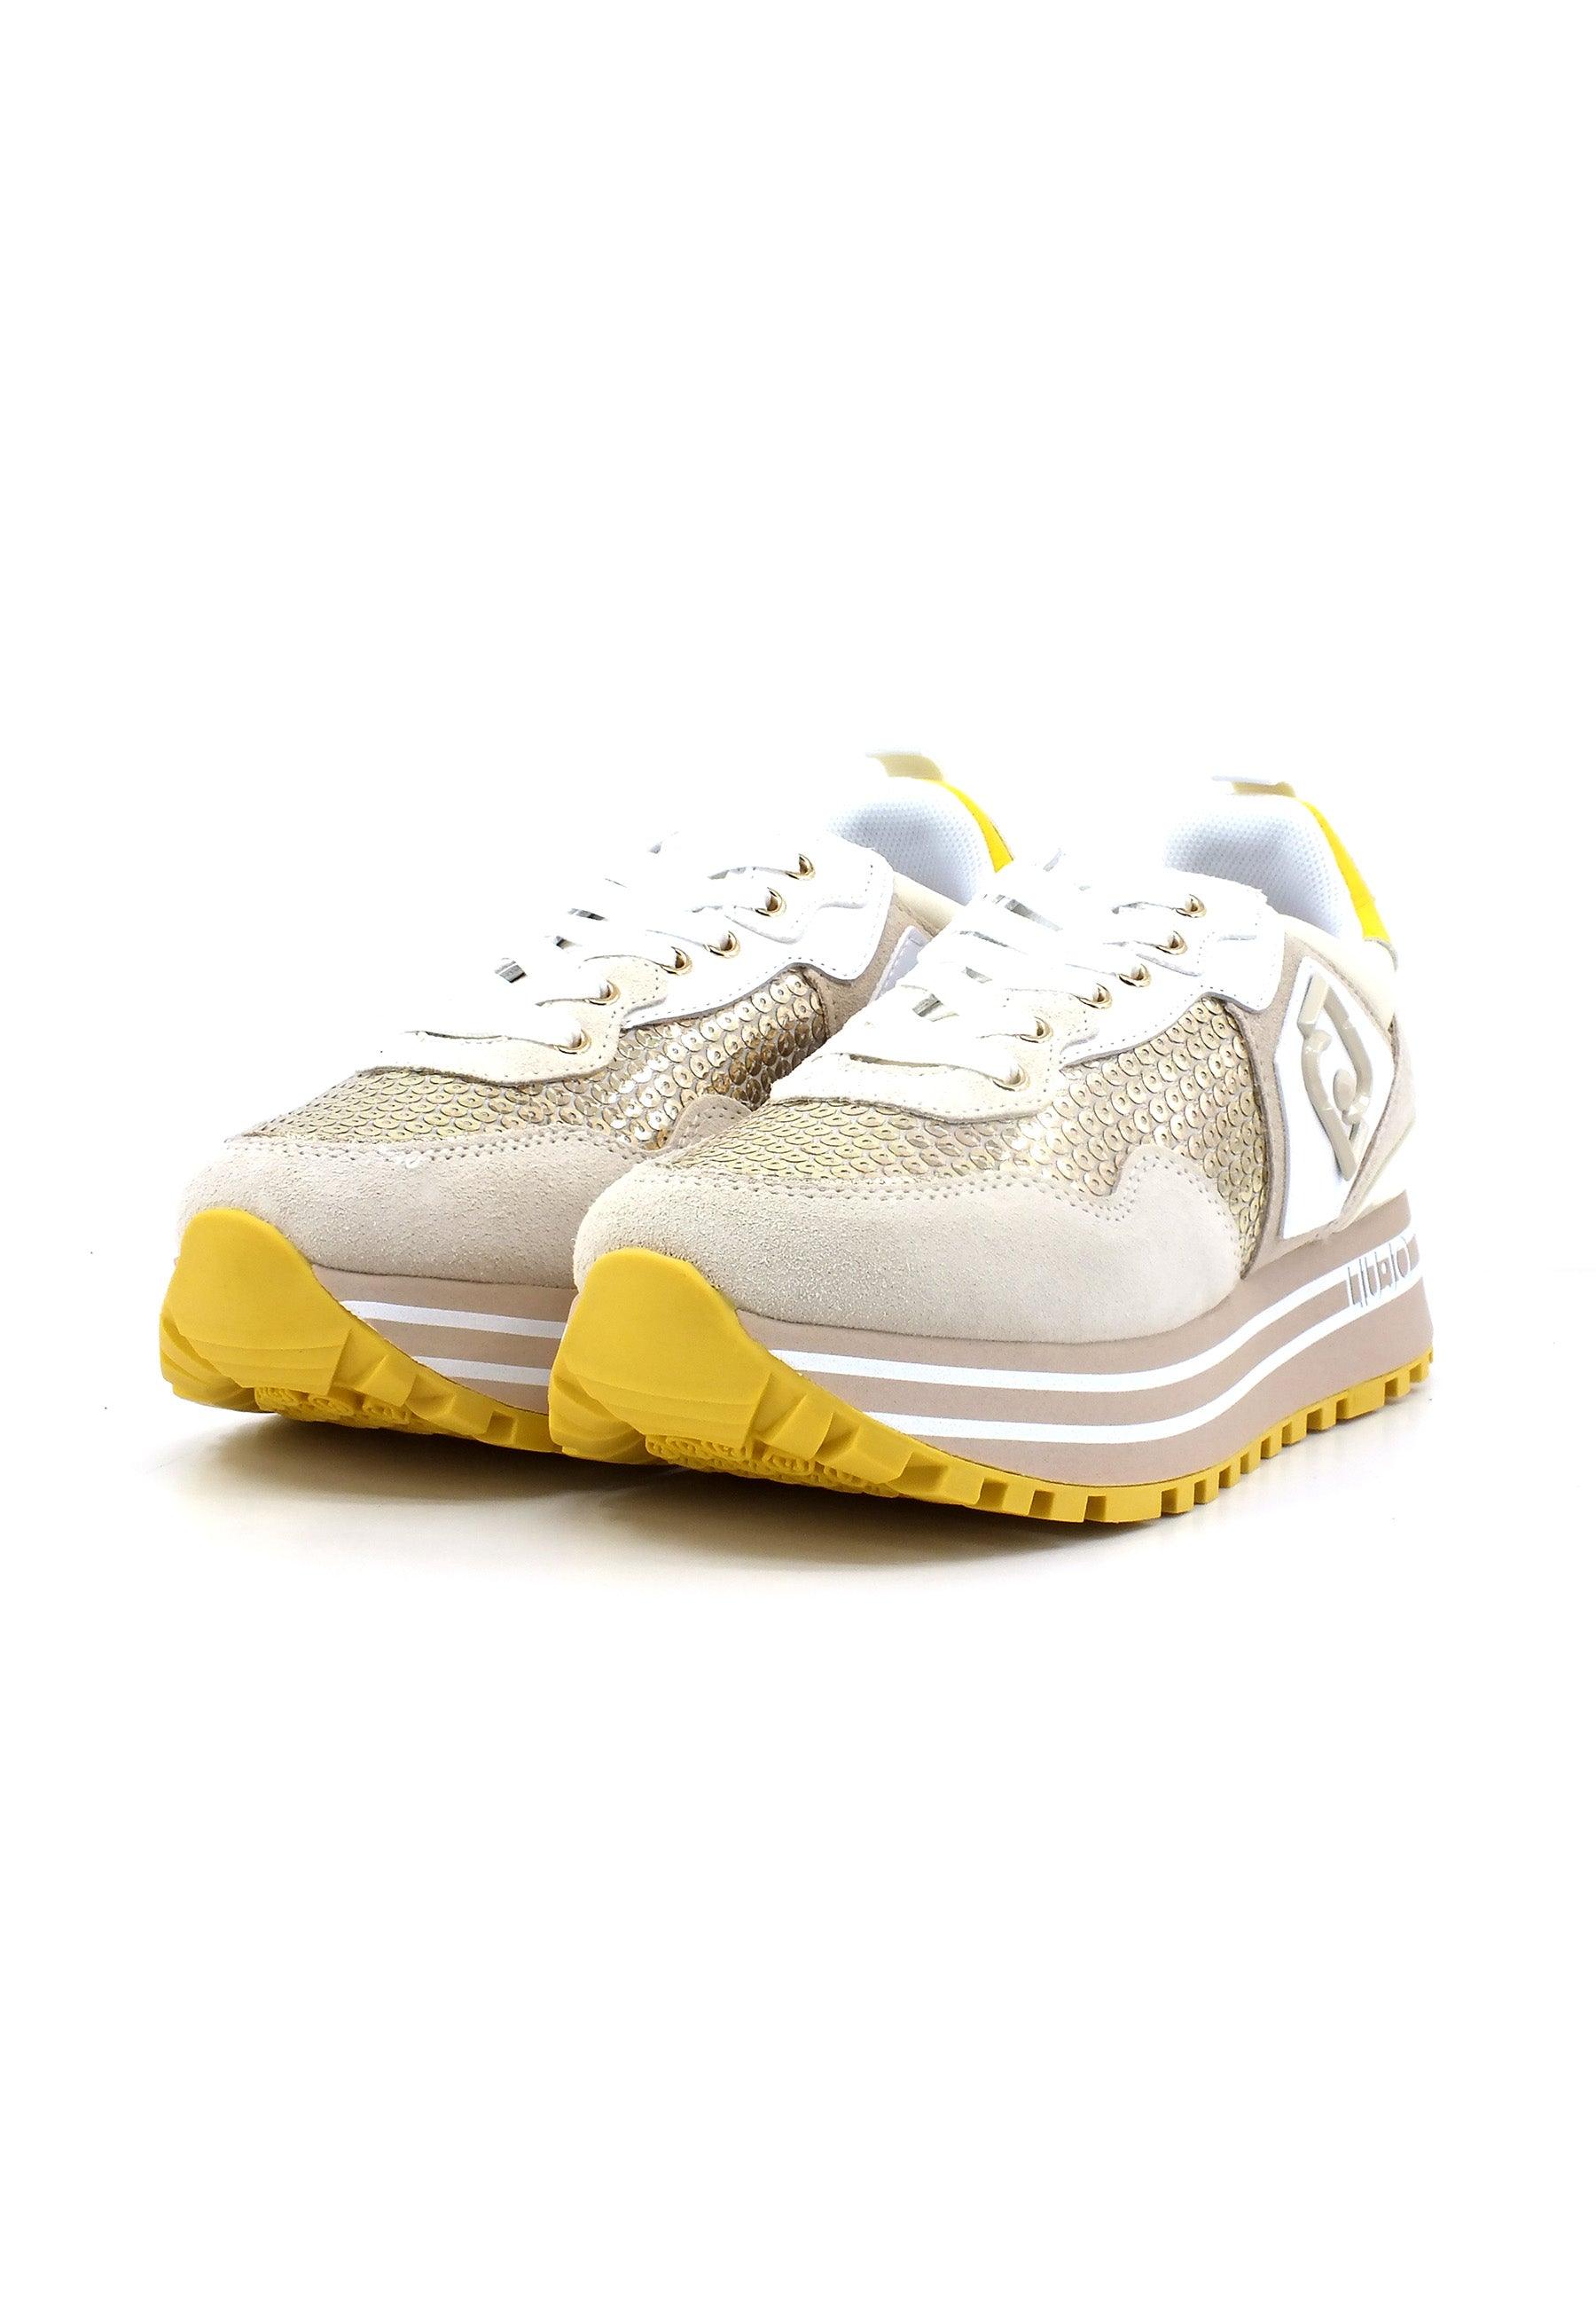 LIU JO Maxi Wonder 01 Sneaker Paillettes Donna Lamb Light Gold BA3013PX343 - Sandrini Calzature e Abbigliamento